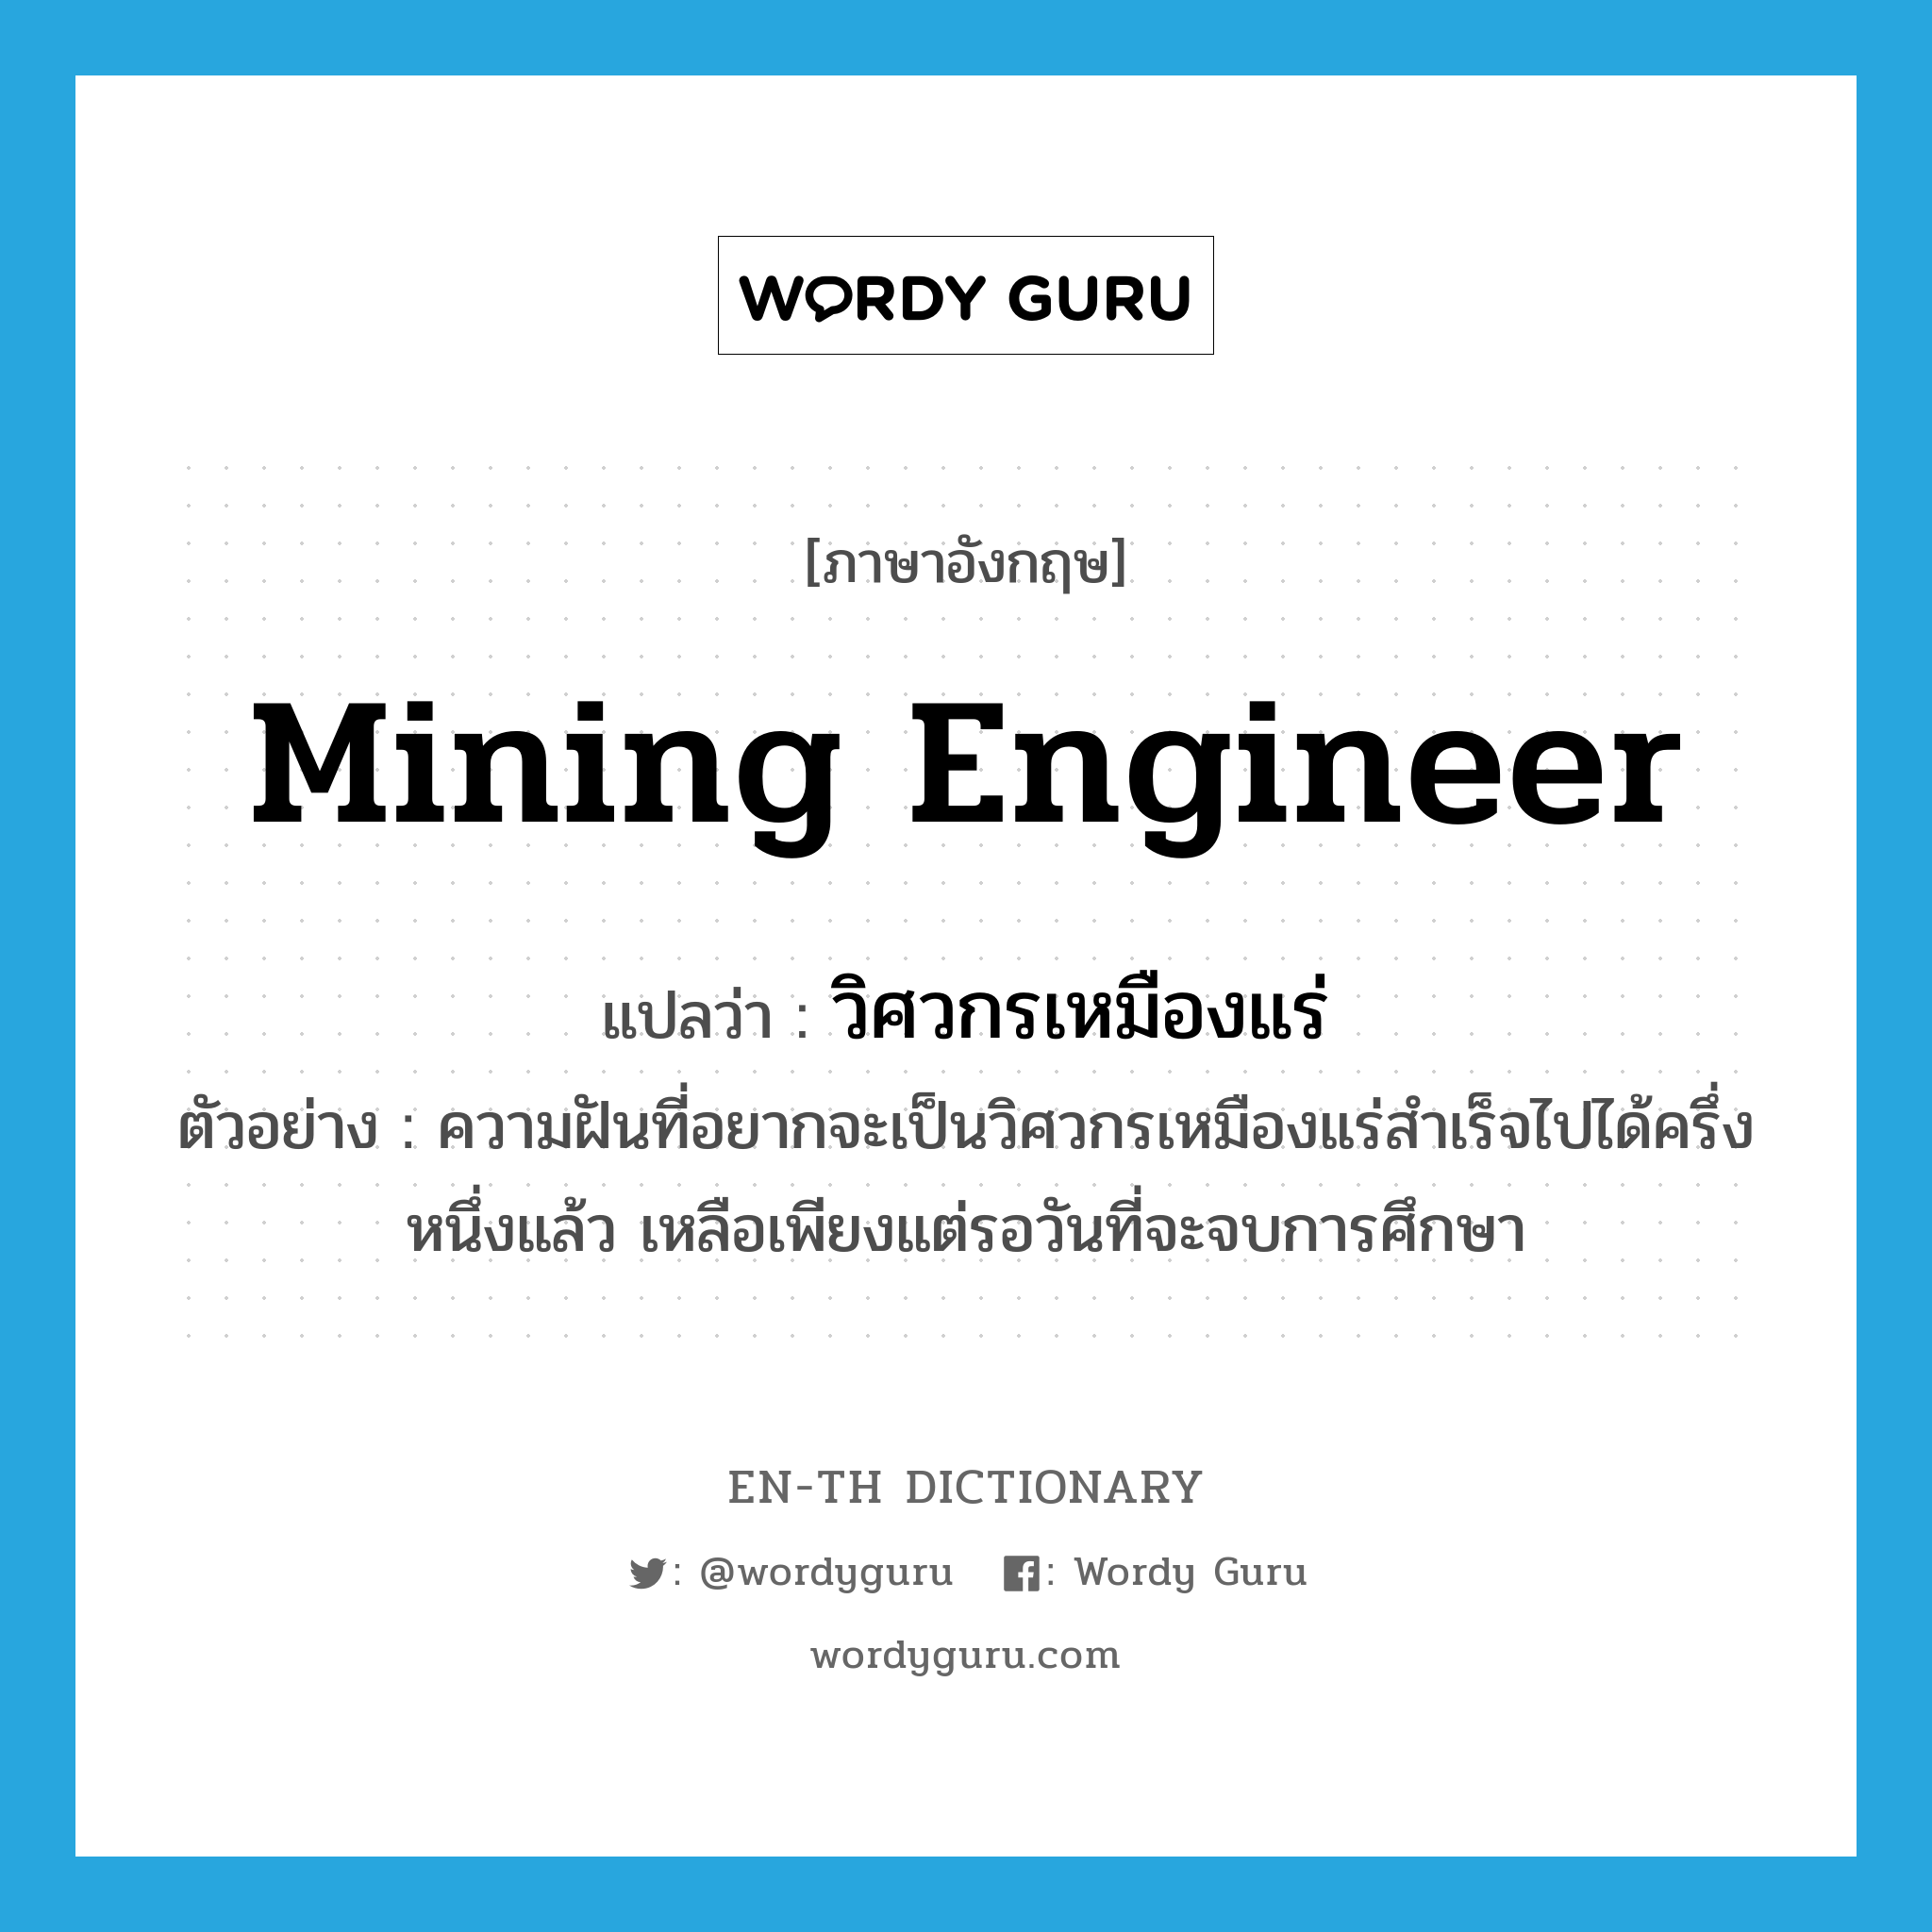 mining engineer แปลว่า?, คำศัพท์ภาษาอังกฤษ mining engineer แปลว่า วิศวกรเหมืองแร่ ประเภท N ตัวอย่าง ความฝันที่อยากจะเป็นวิศวกรเหมืองแร่สำเร็จไปได้ครึ่งหนึ่งแล้ว เหลือเพียงแต่รอวันที่จะจบการศึกษา หมวด N